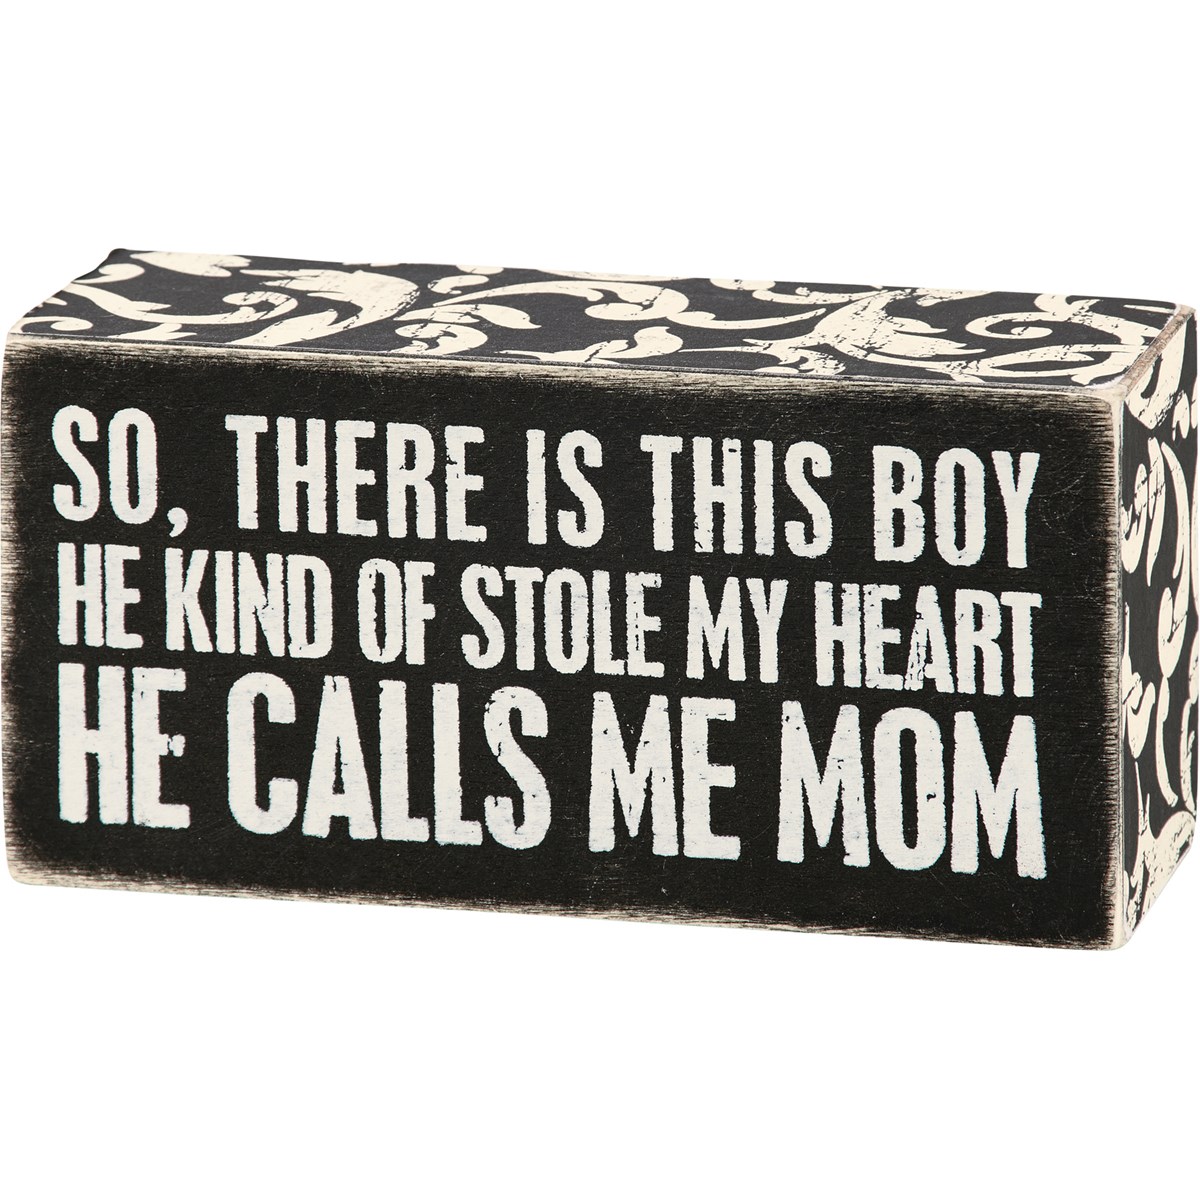 Calls Me Mom Box Sign - Wood, Paper